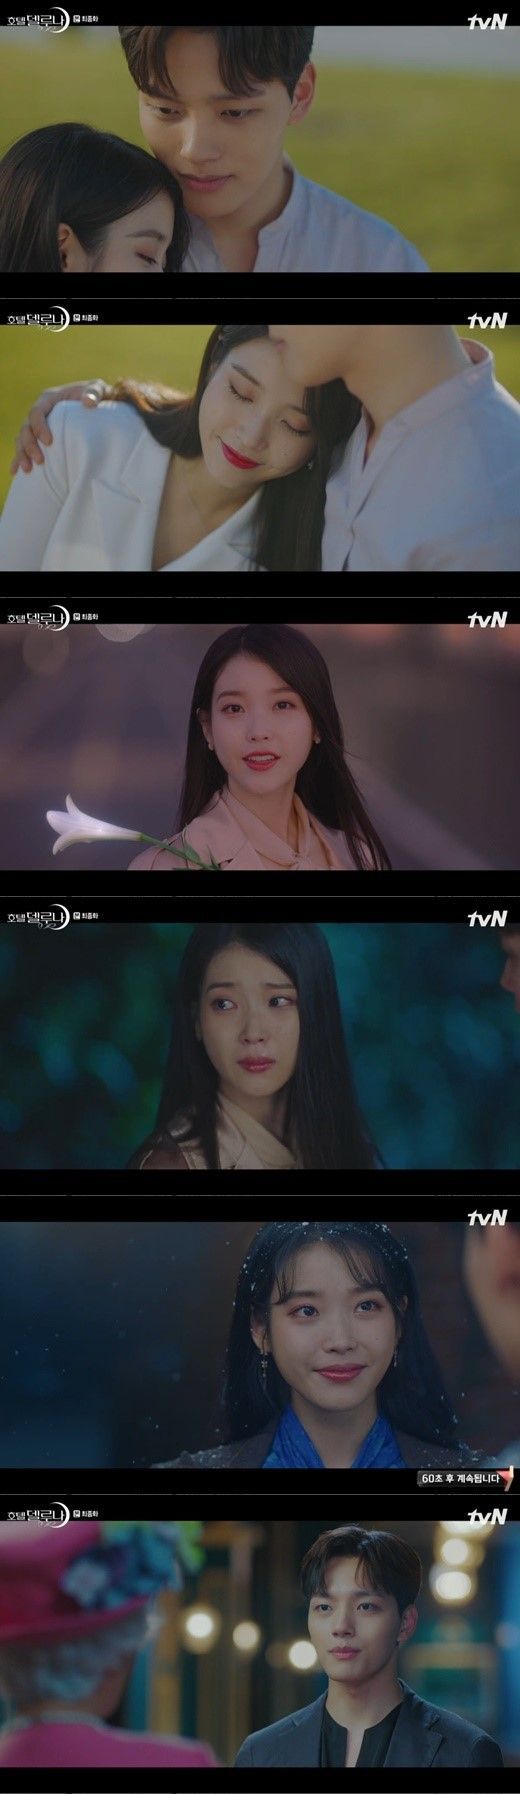 '호텔 델루나' 장만월(이지은 분)과 구찬성(여진구 분)이 재회하면서 해피엔딩을 맞았다/사진=tvN '호텔델루나' 화면 캡처